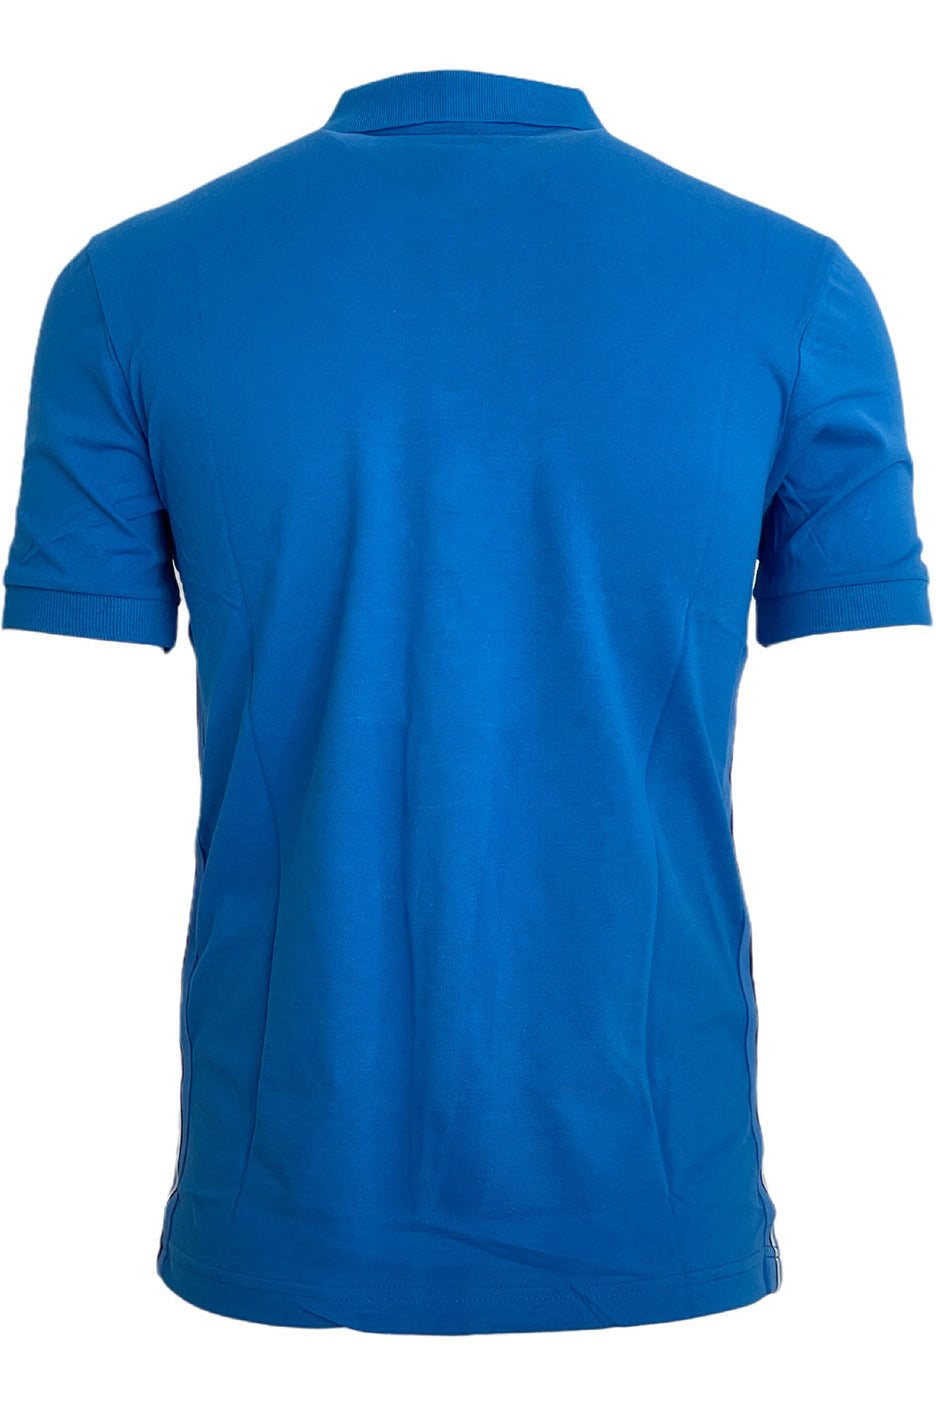 Hugo Boss Polo Shirt in Blue